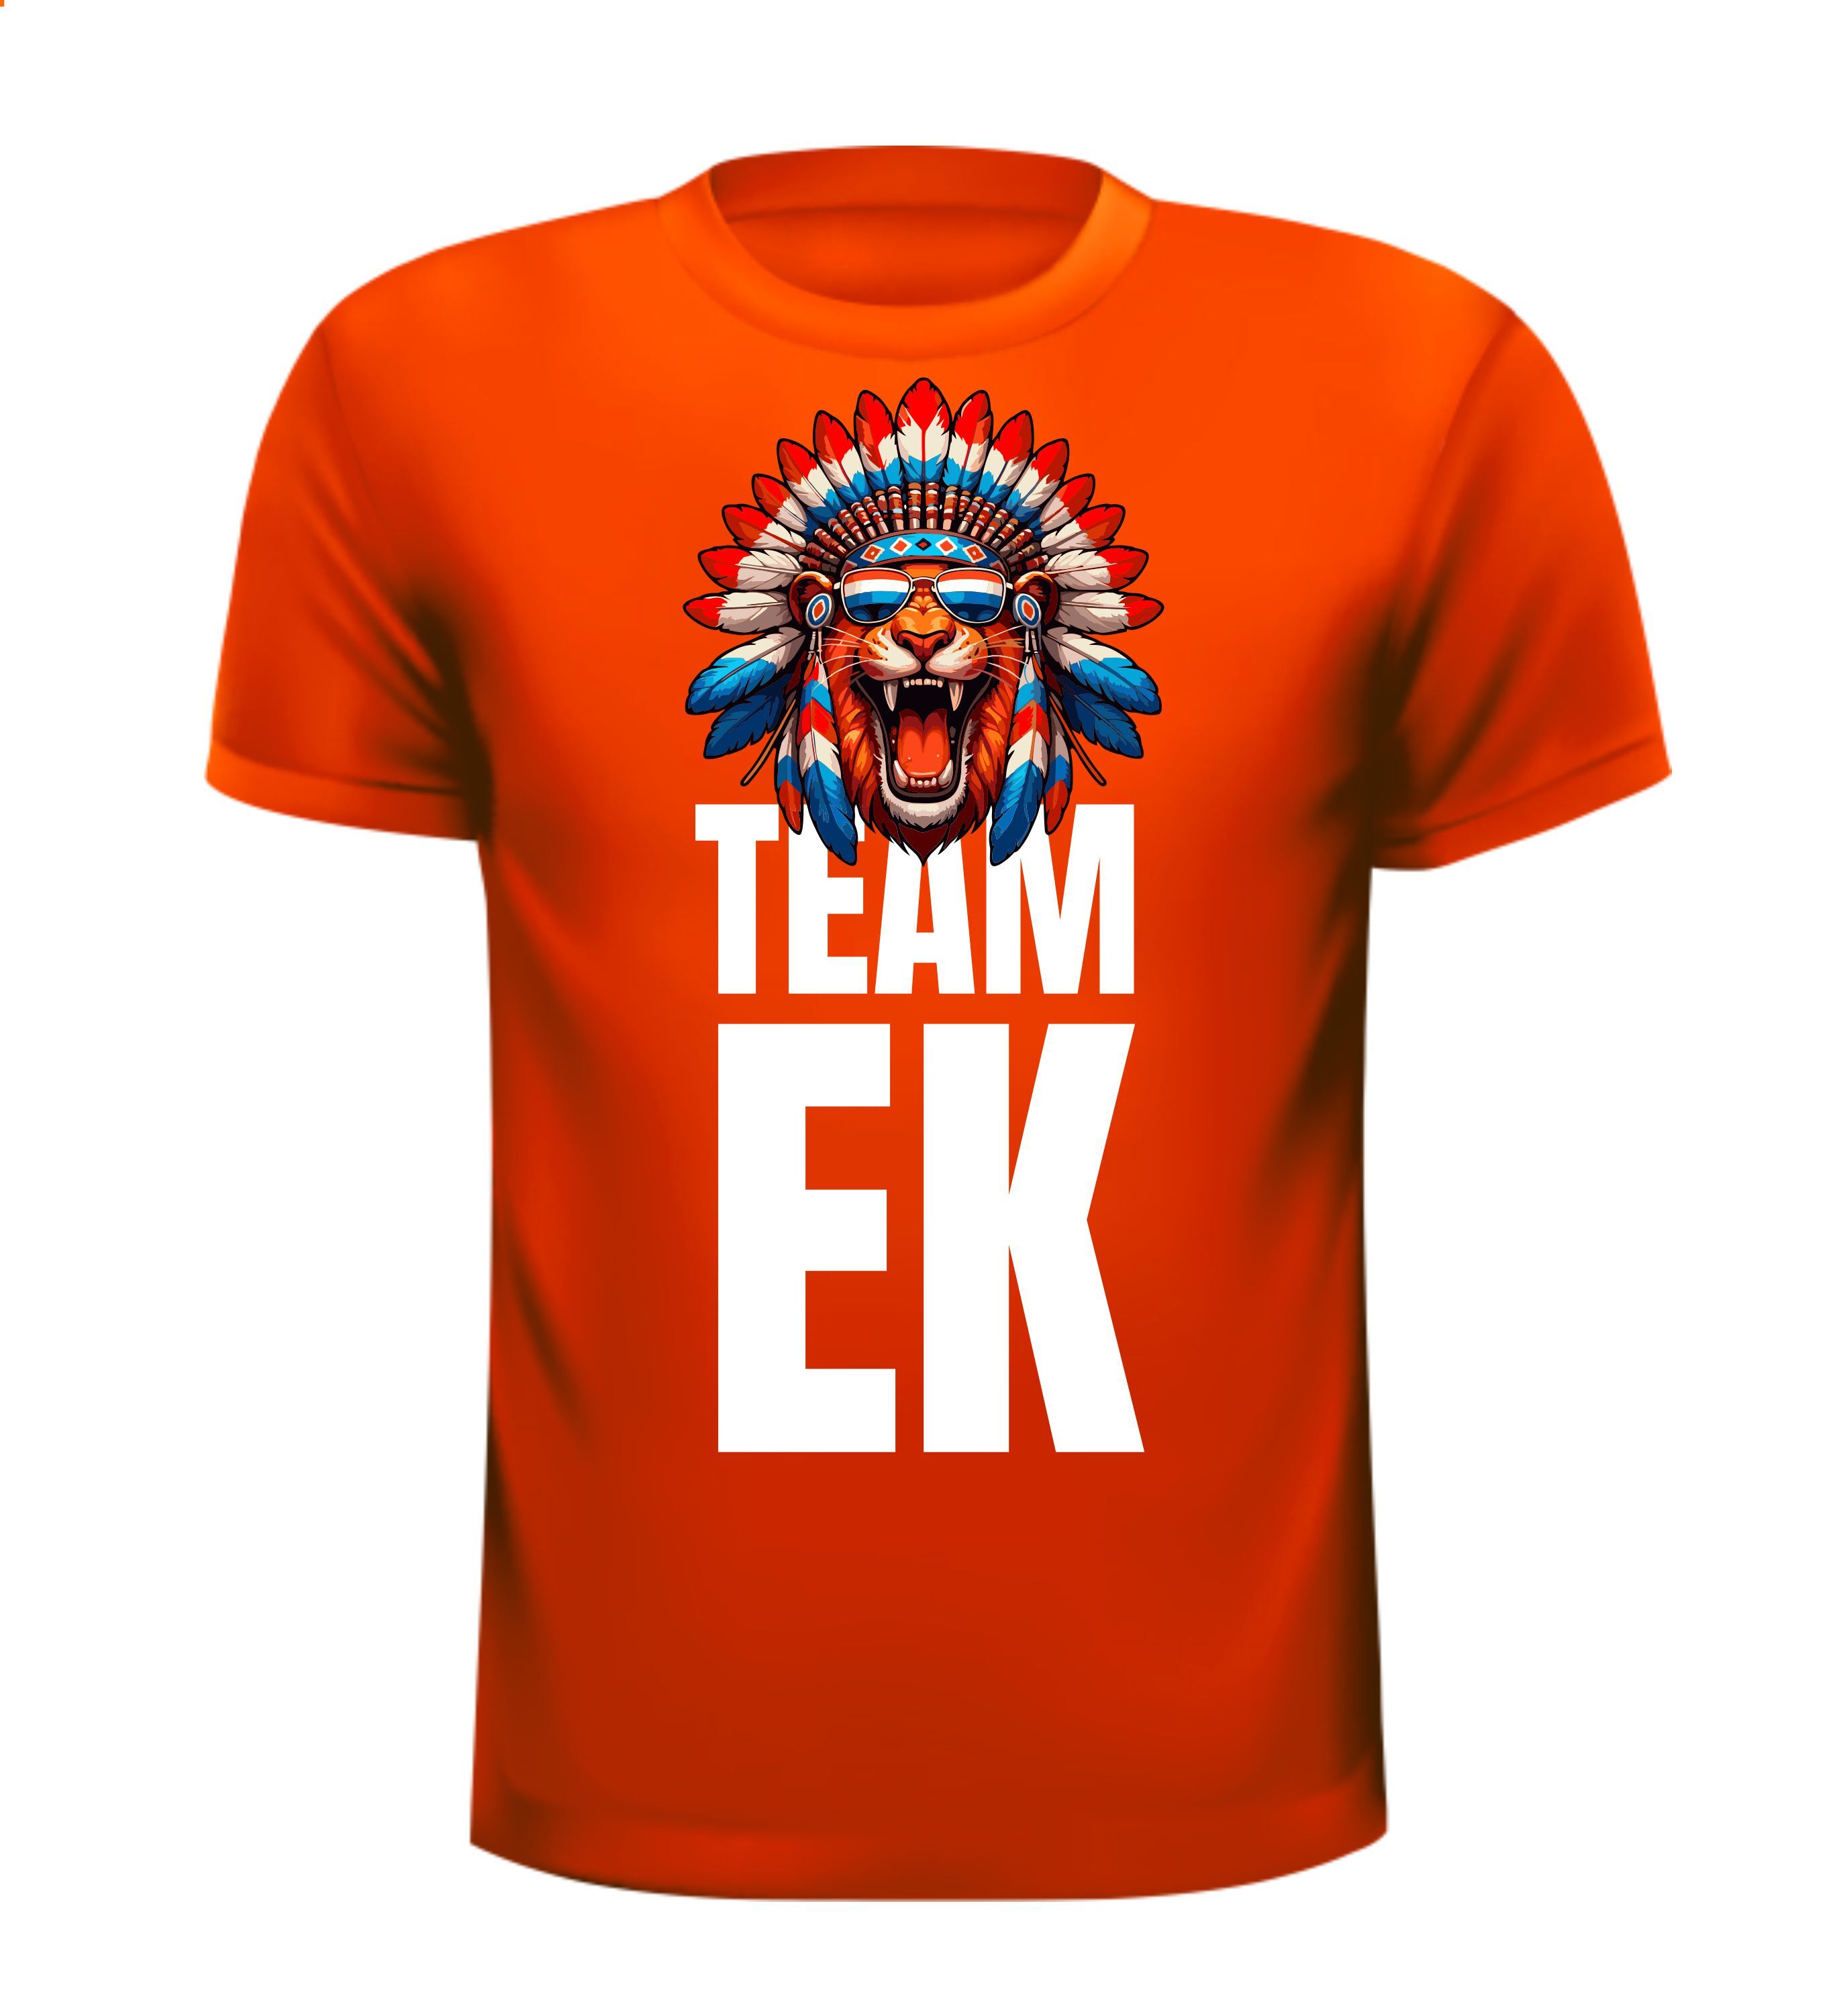 Oranje shirtje voor team EK